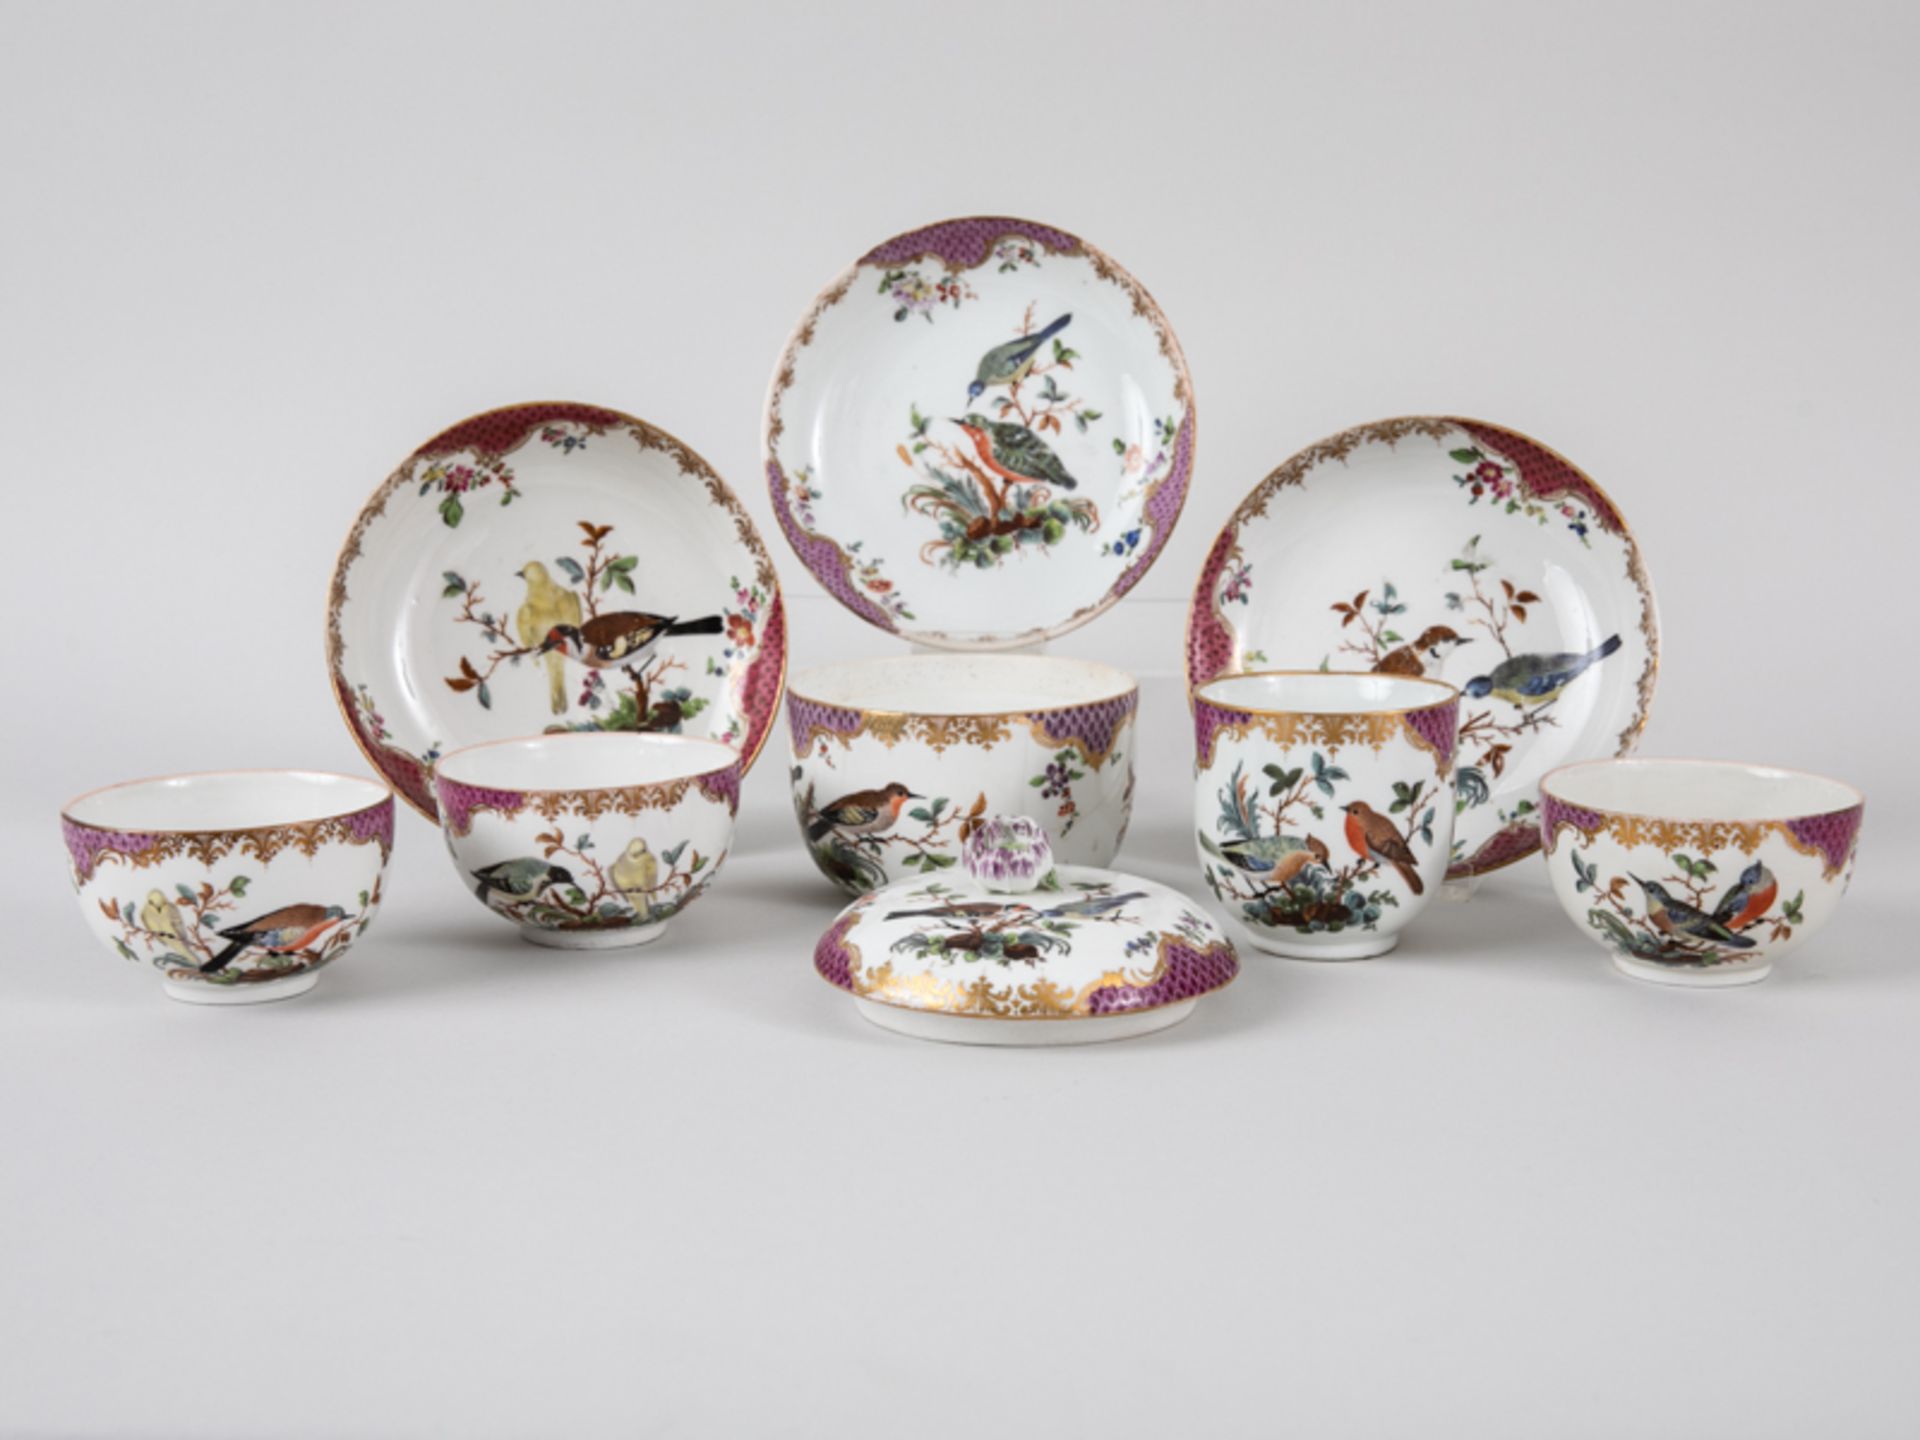 3 Teetassen, Zuckerdose + Kaffeetasse, Meissen, ca. 1760/74. Weißporzellan m. polychromer Voge - Bild 2 aus 7